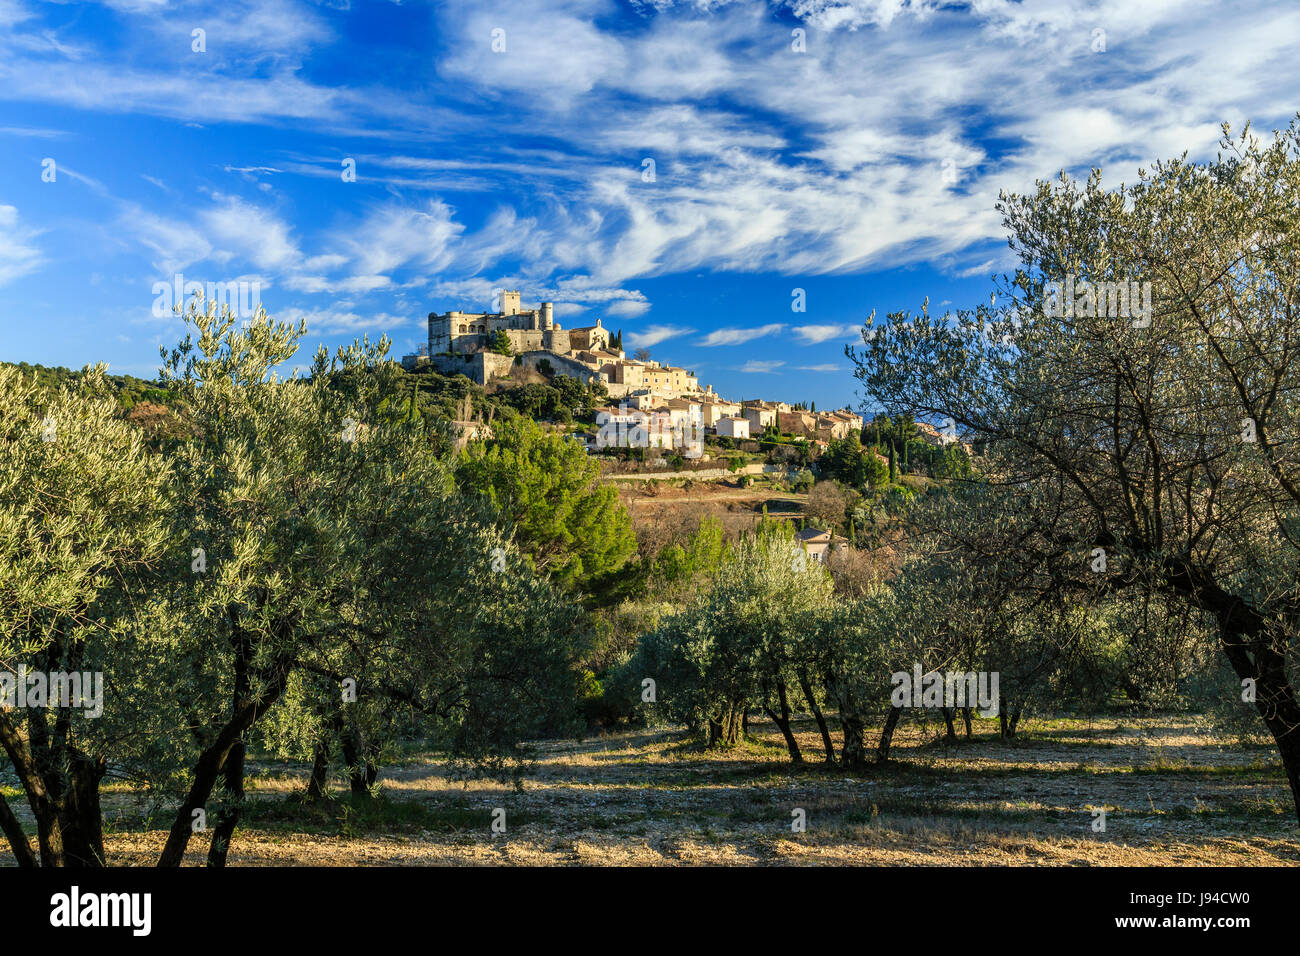 France, Vaucluse, le Barroux, le village surpassé du château vu d'une oliveraie Banque D'Images